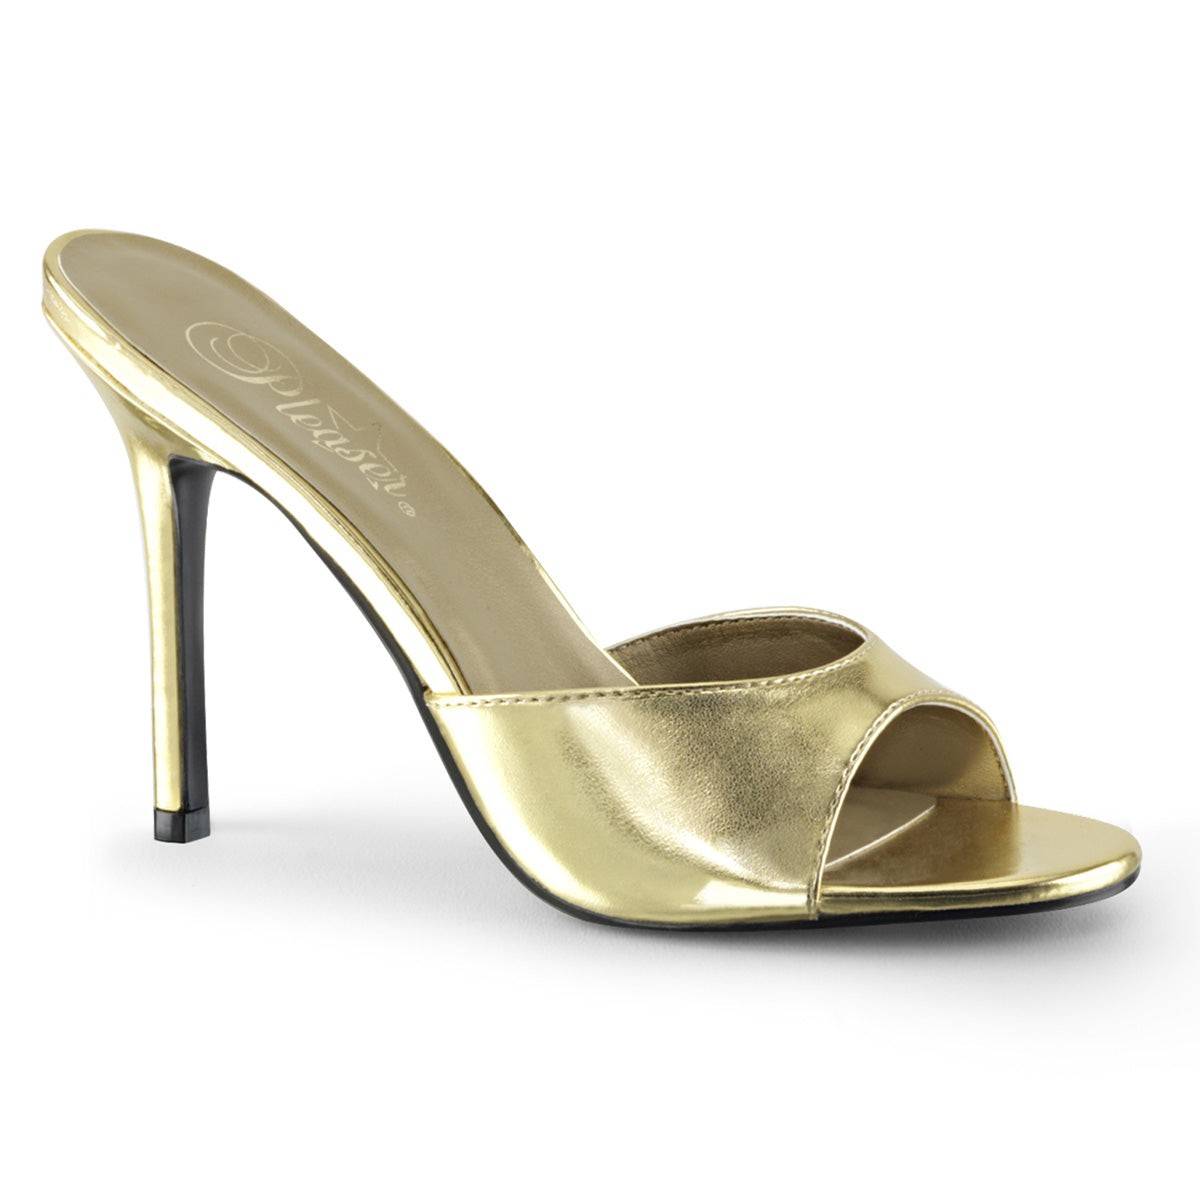 CLASSIQUE-01 Gold Slide High Heel